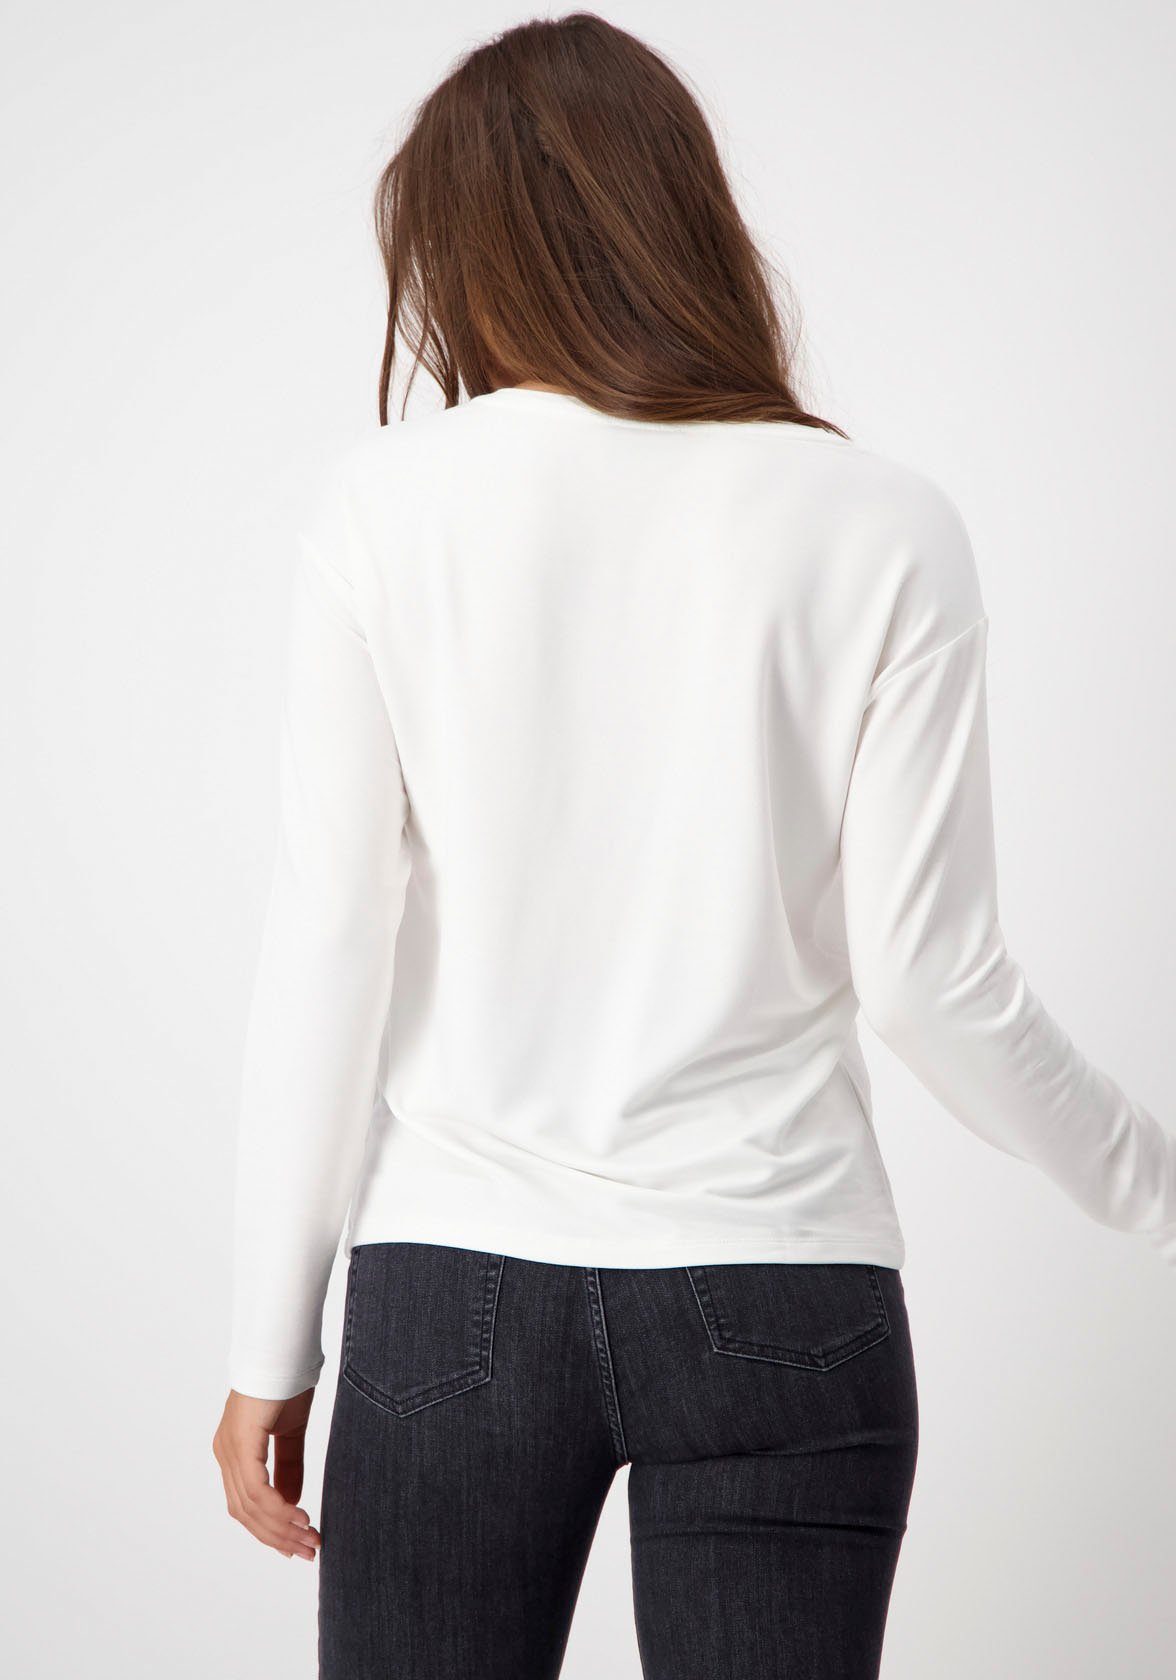 Monari Print-Shirt Shirt tonigen + glänzenden in Leopardenmuster Karo Leo off-white